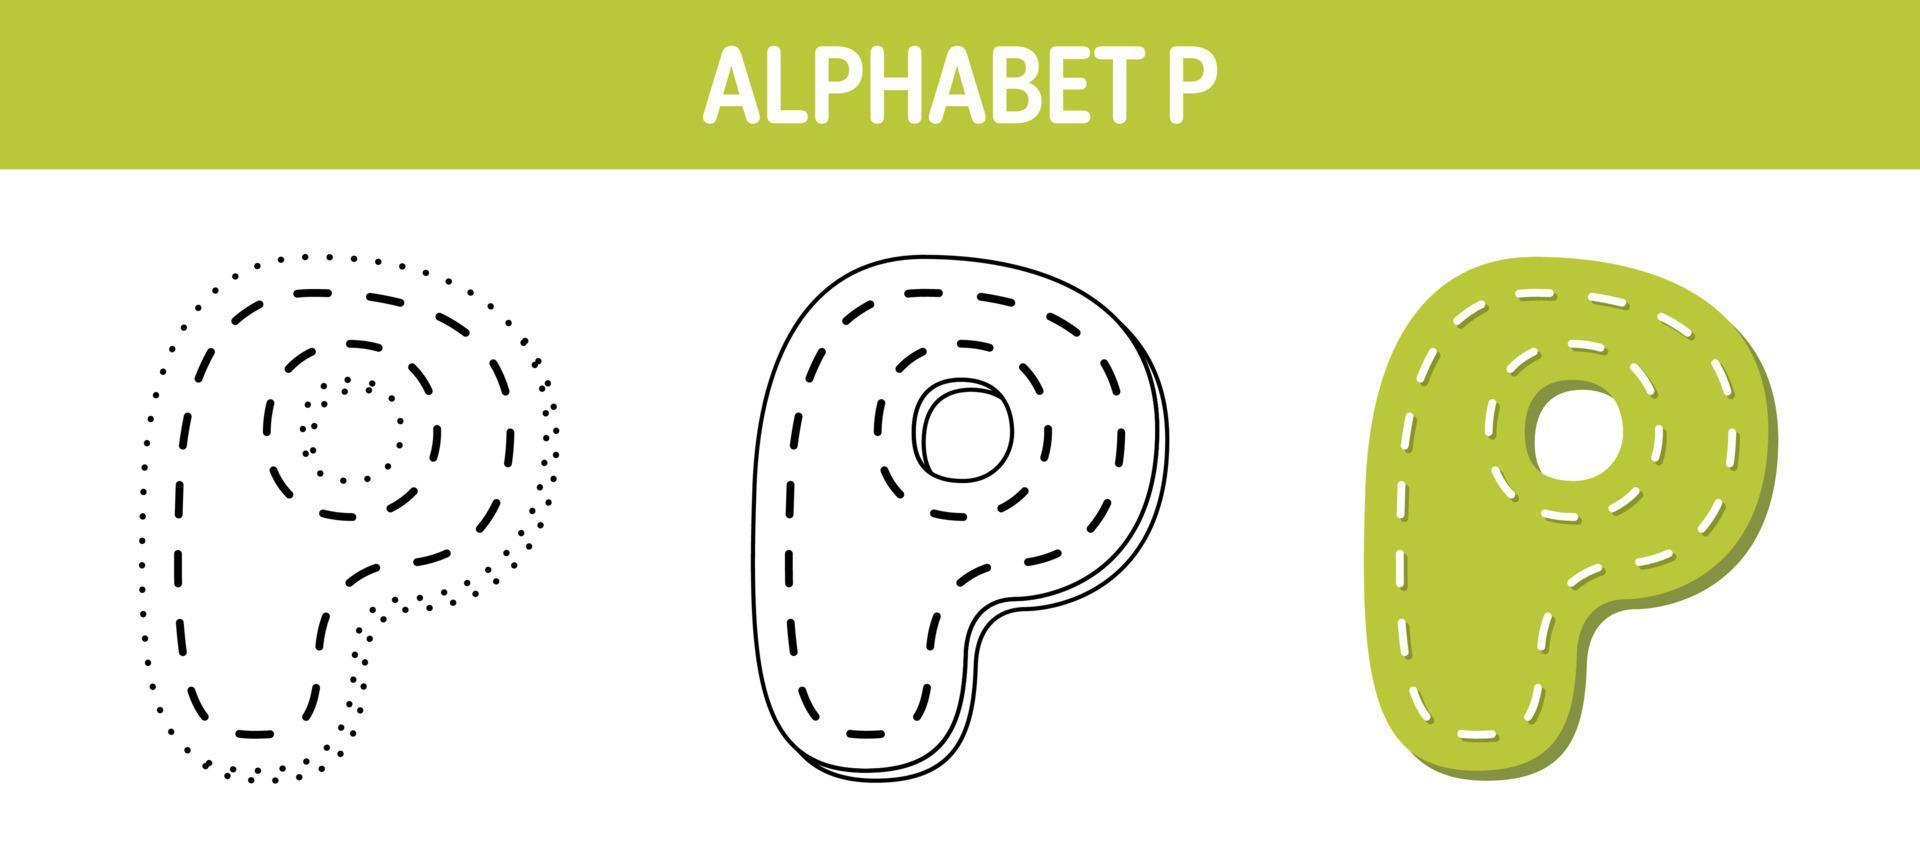 Arbeitsblatt zum nachzeichnen und ausmalen von alphabet p für kinder vektor